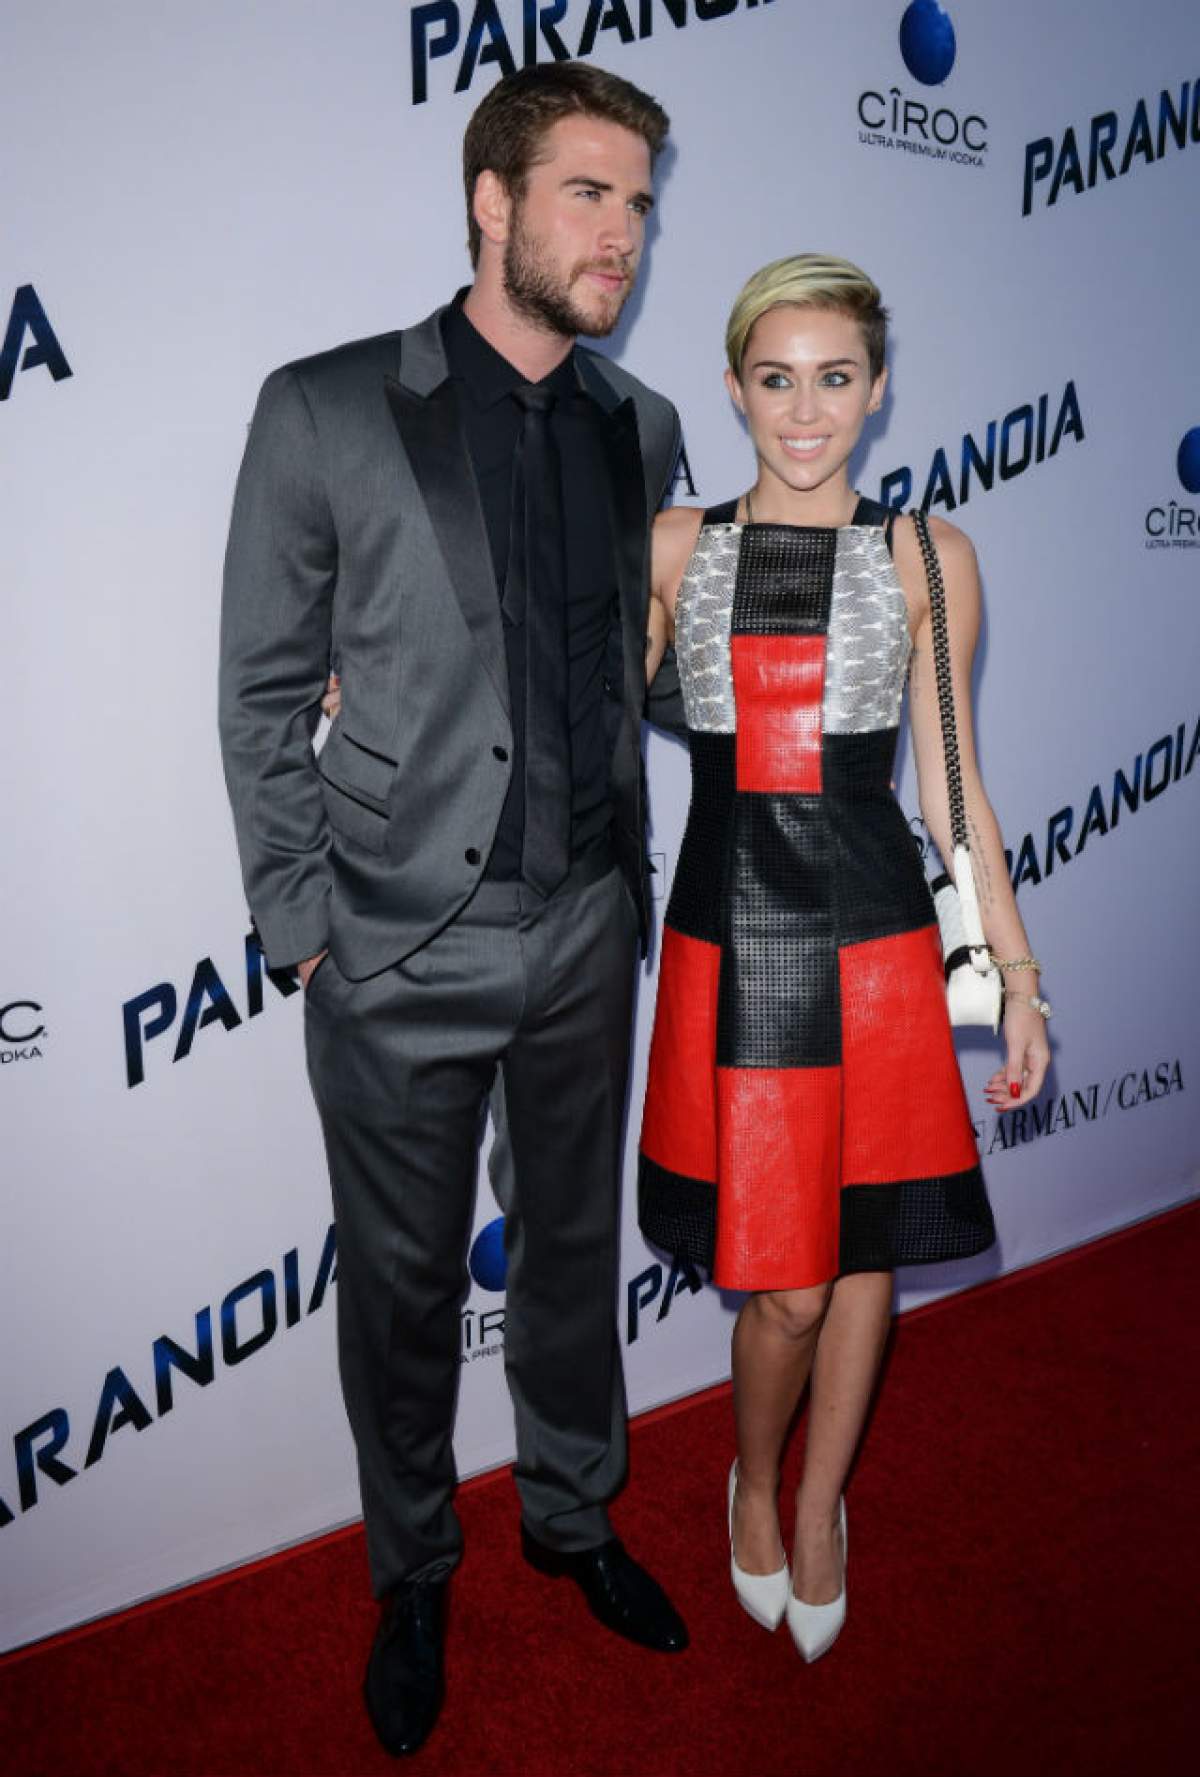 Bat clopote de nuntă pentru Miley Cyrus şi Liam Hemsworth